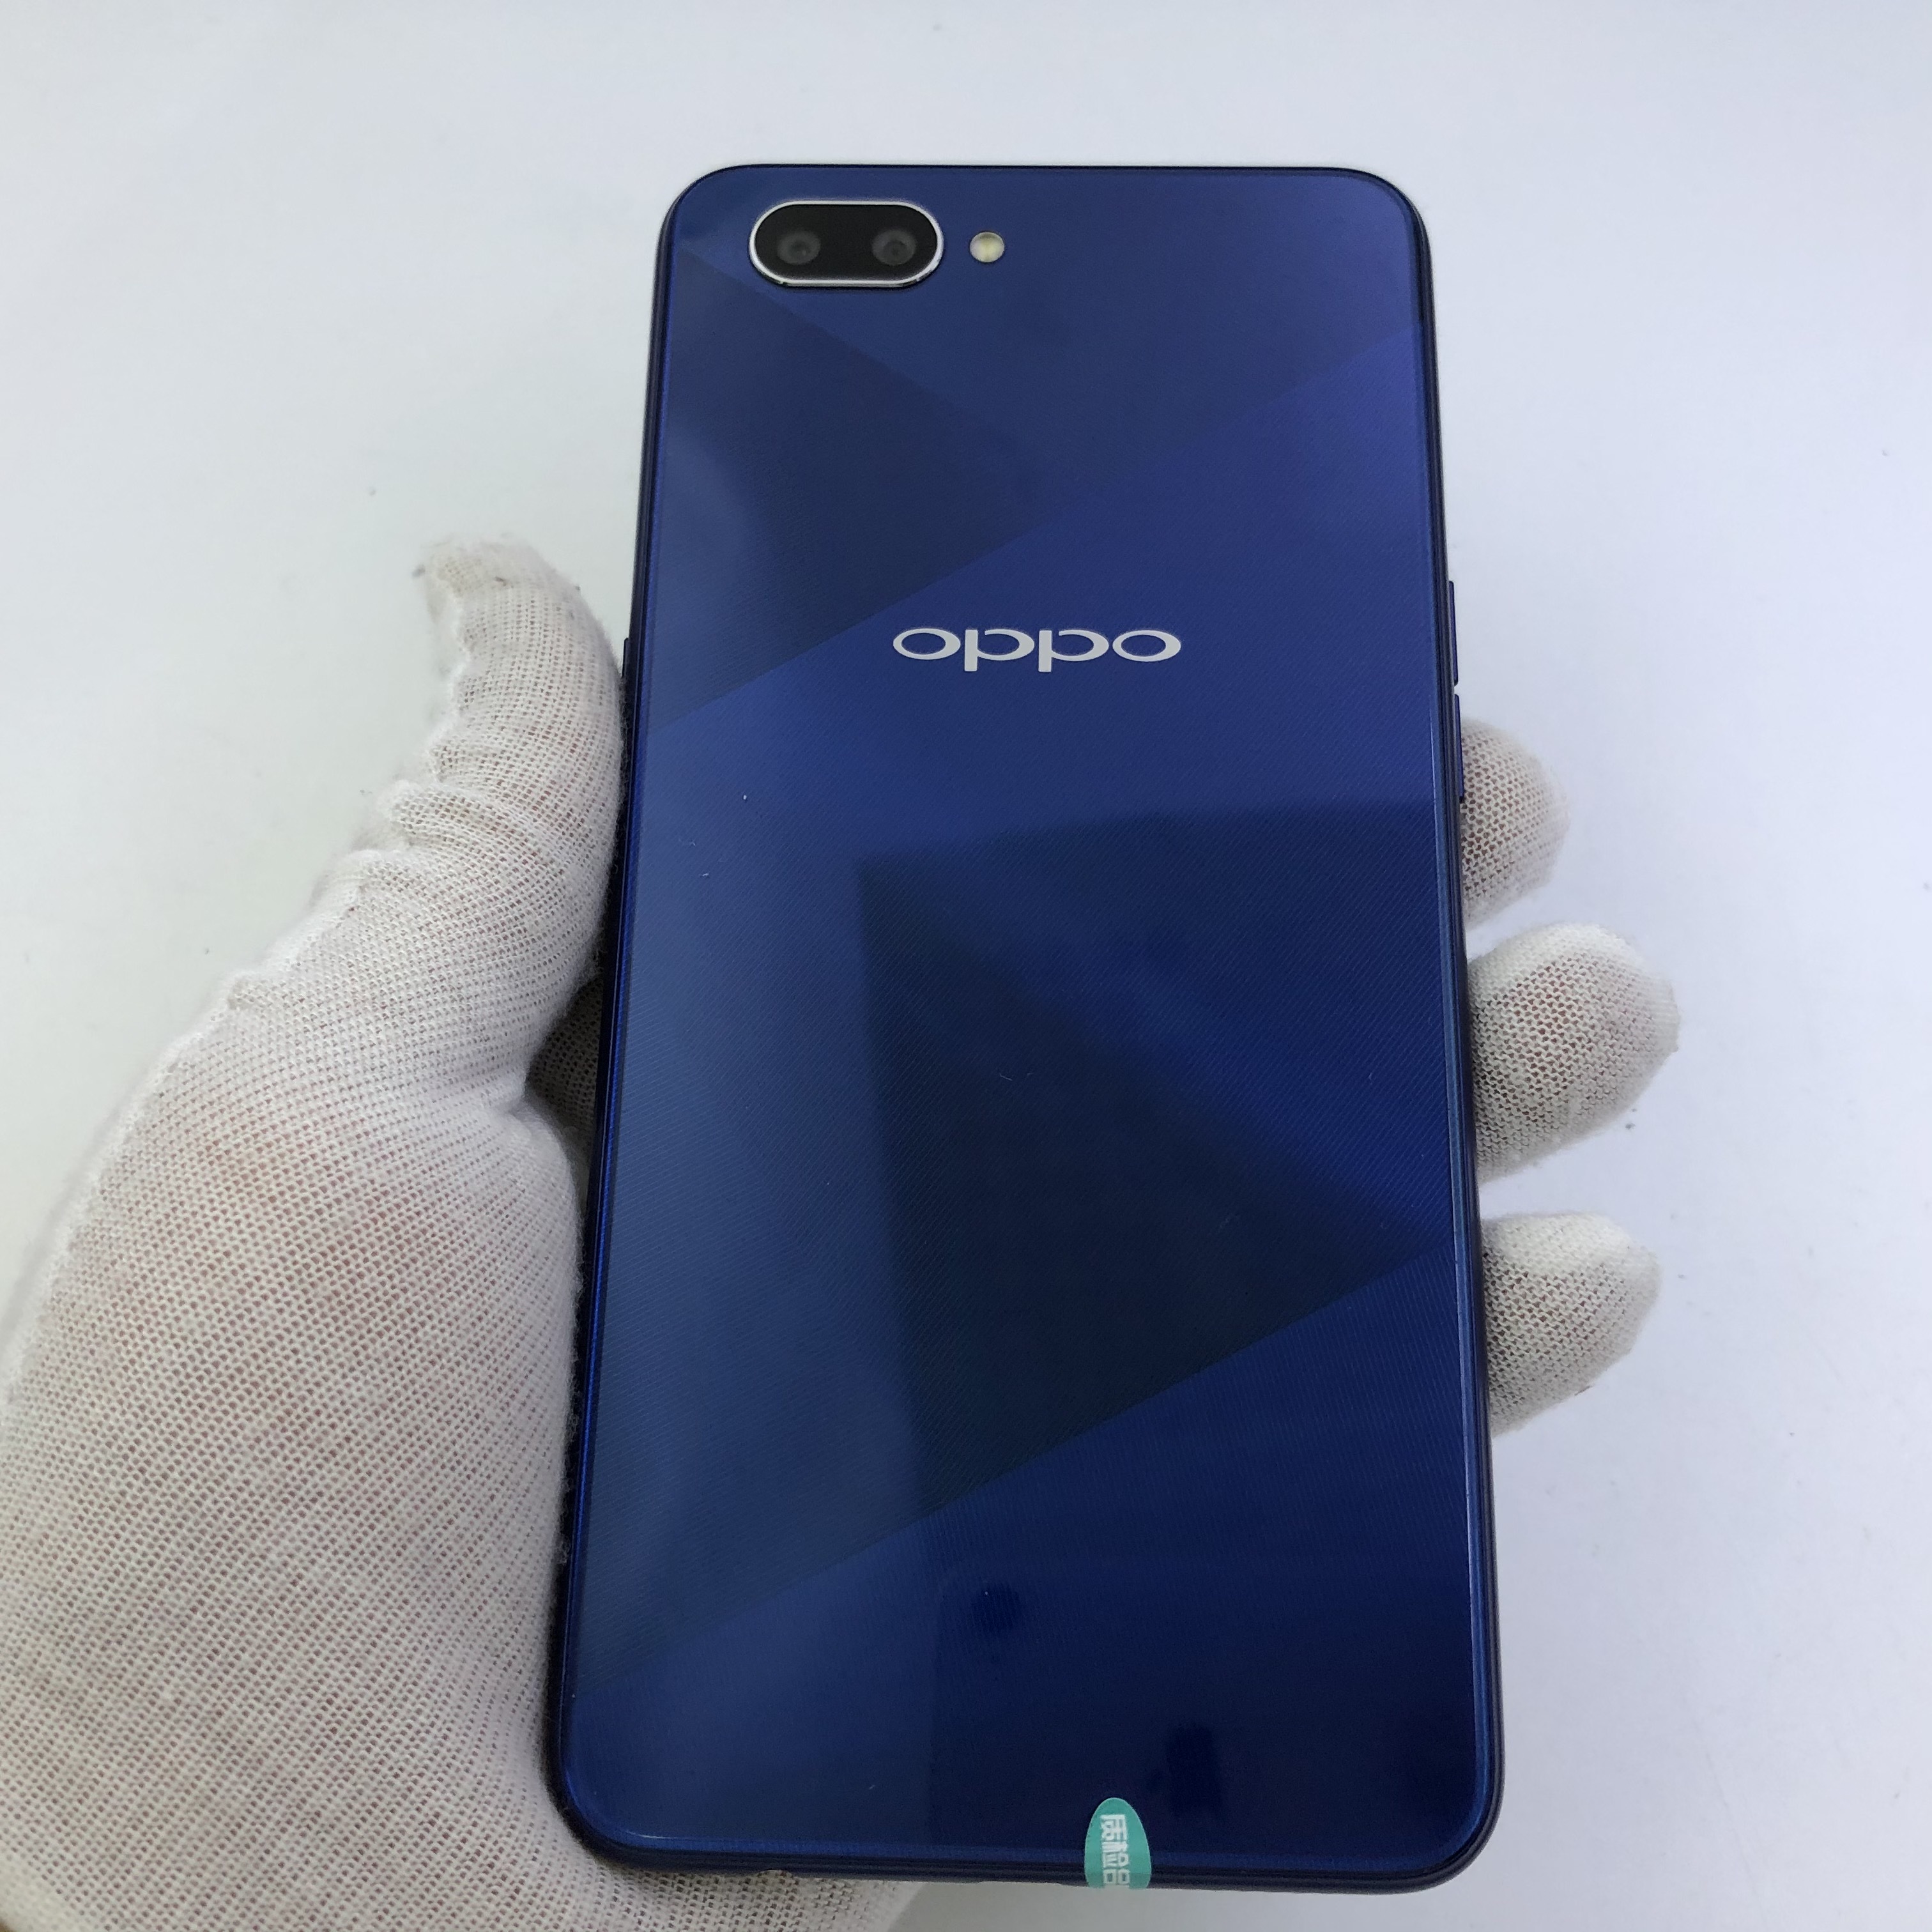 oppoa5(oppoa5手机配置参数)